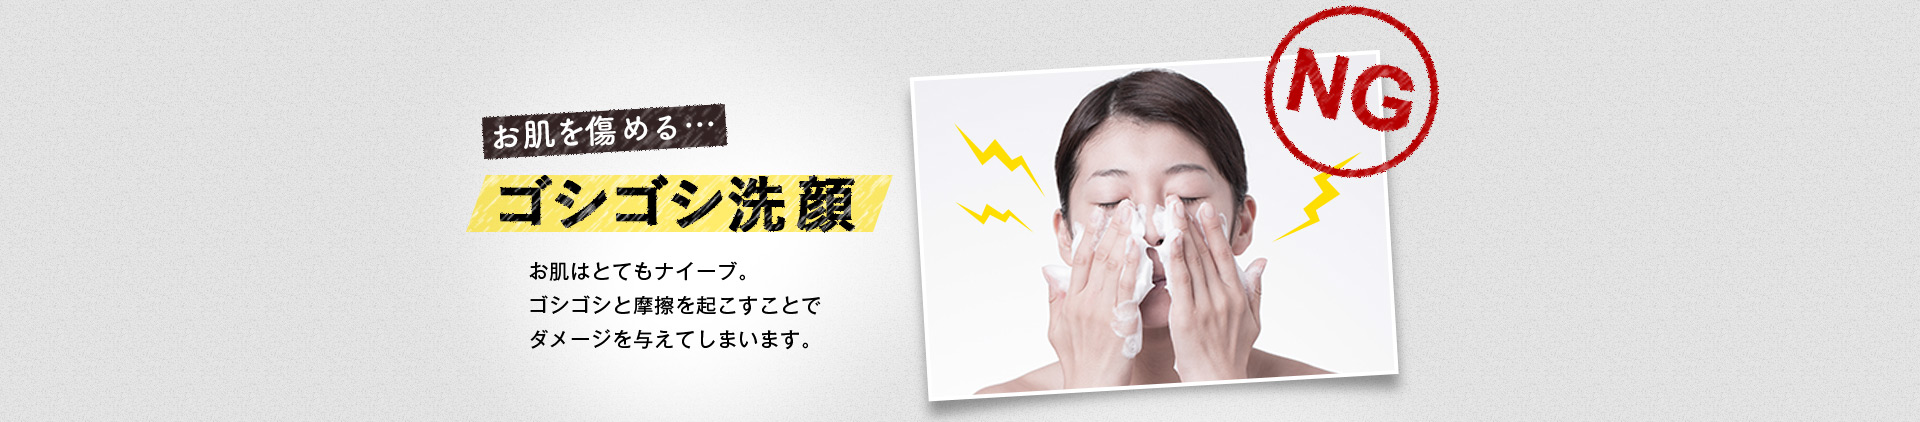 お肌を傷める…ゴシゴシ洗顔 お肌はとてもナイーブ。ゴシゴシと摩擦を起こすことでダメージを与えてしまいます。